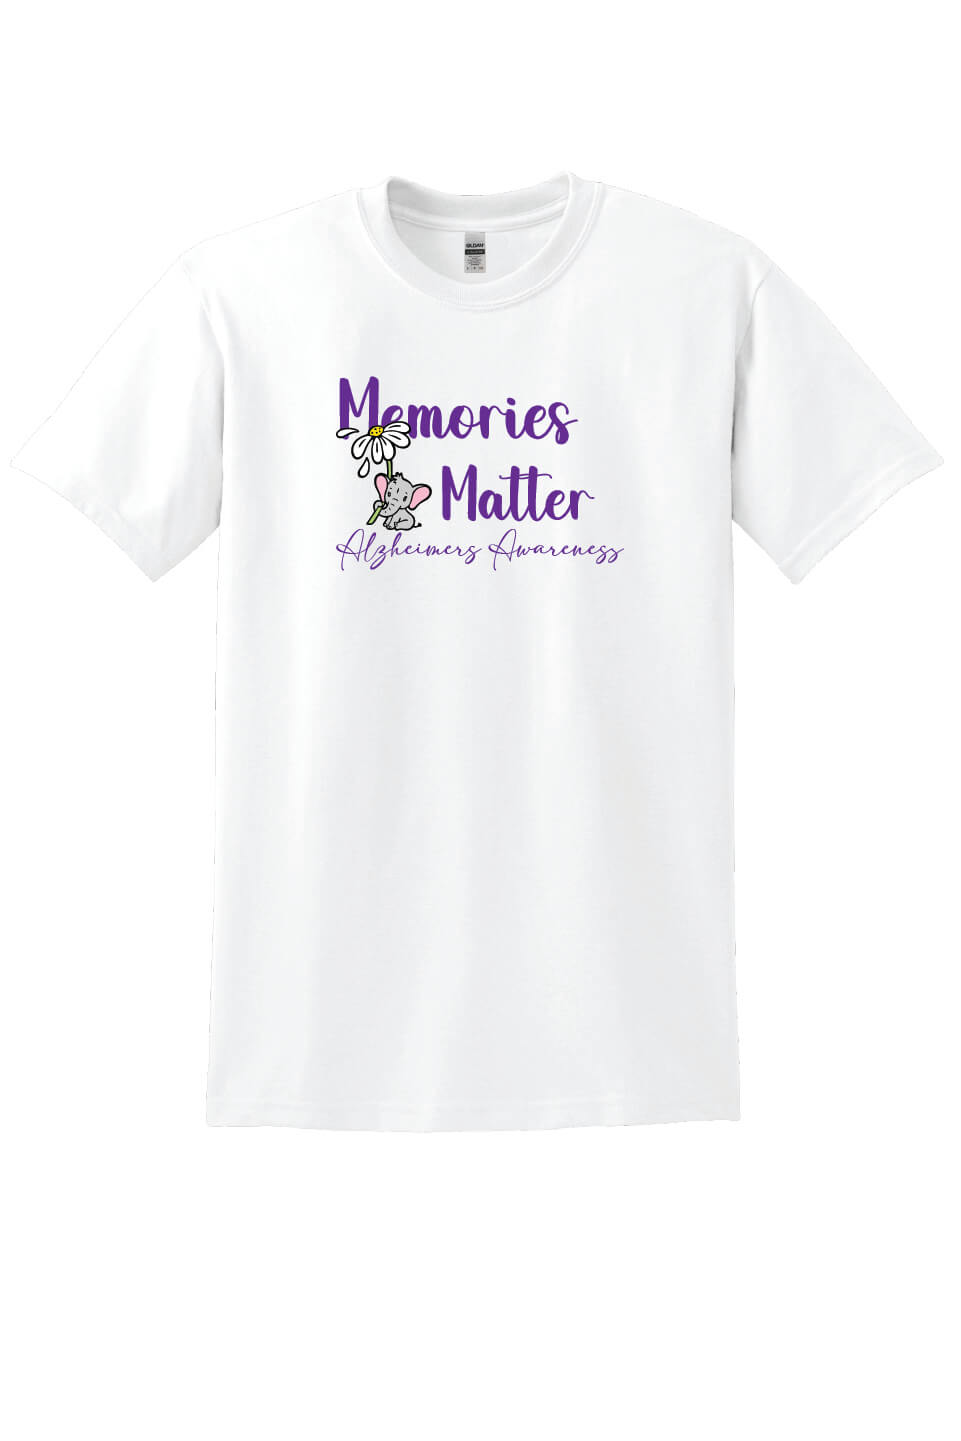 Memories Matter - Alzheimers Awareness Short Sleeve T-Shirt white